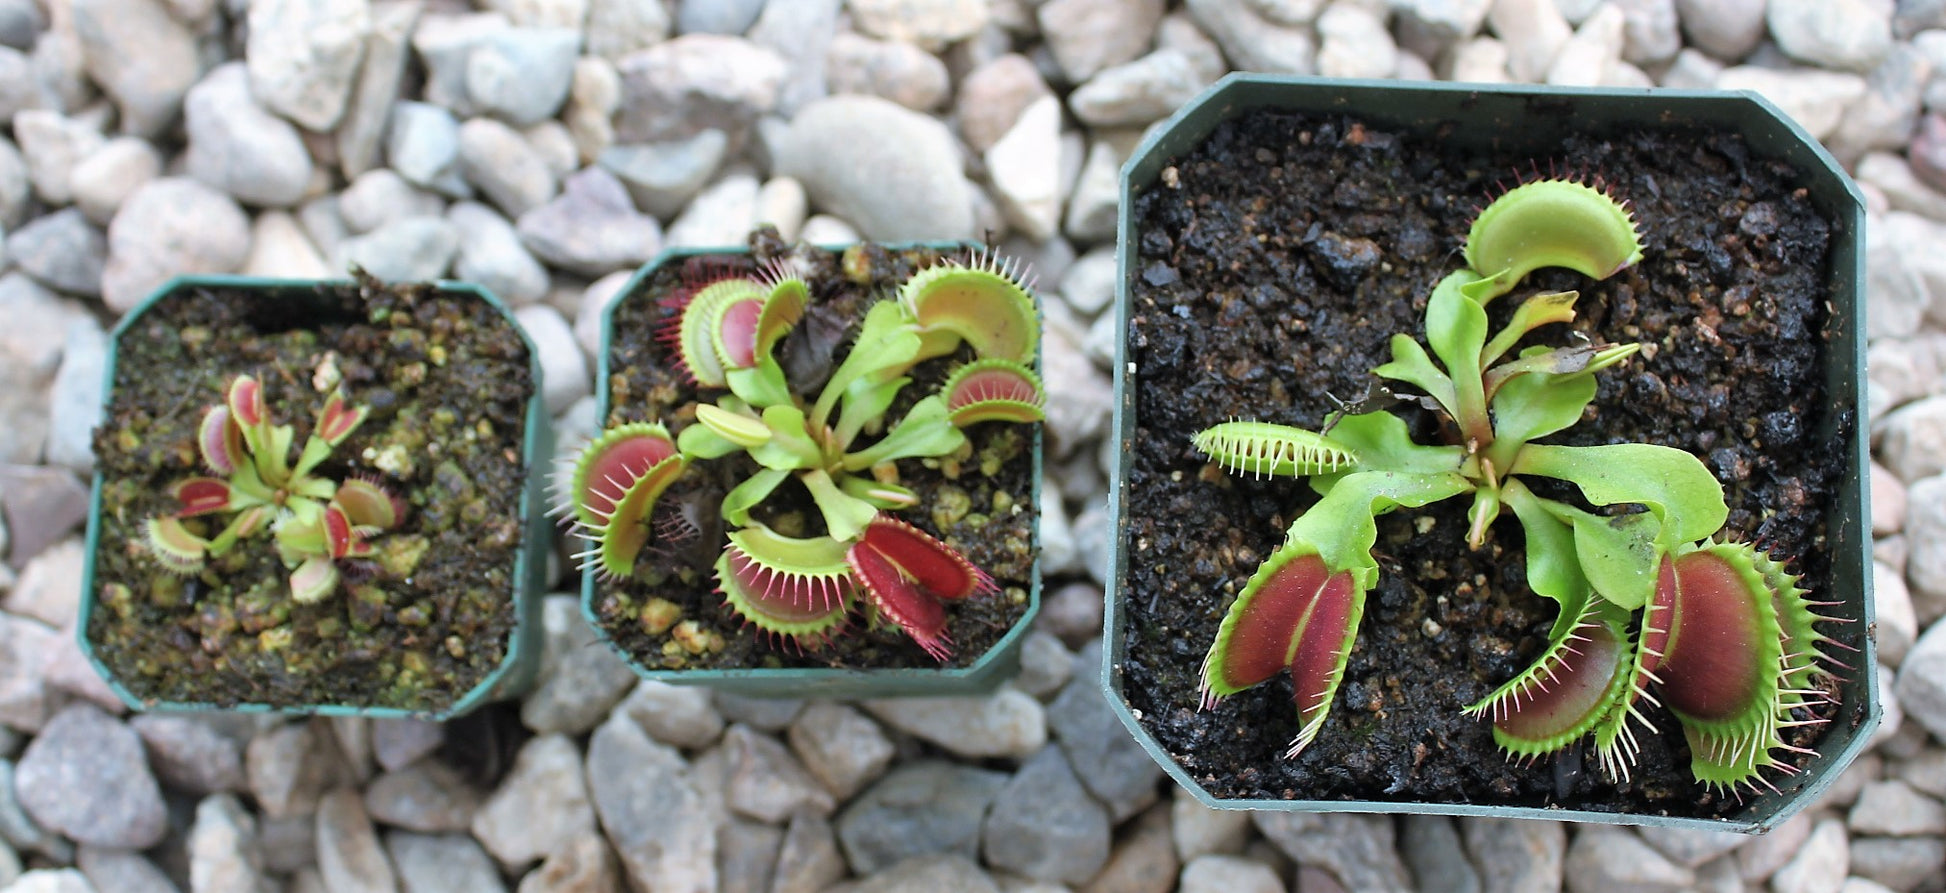 Dionaea muscipula- Venus Flytrap B52 sizes